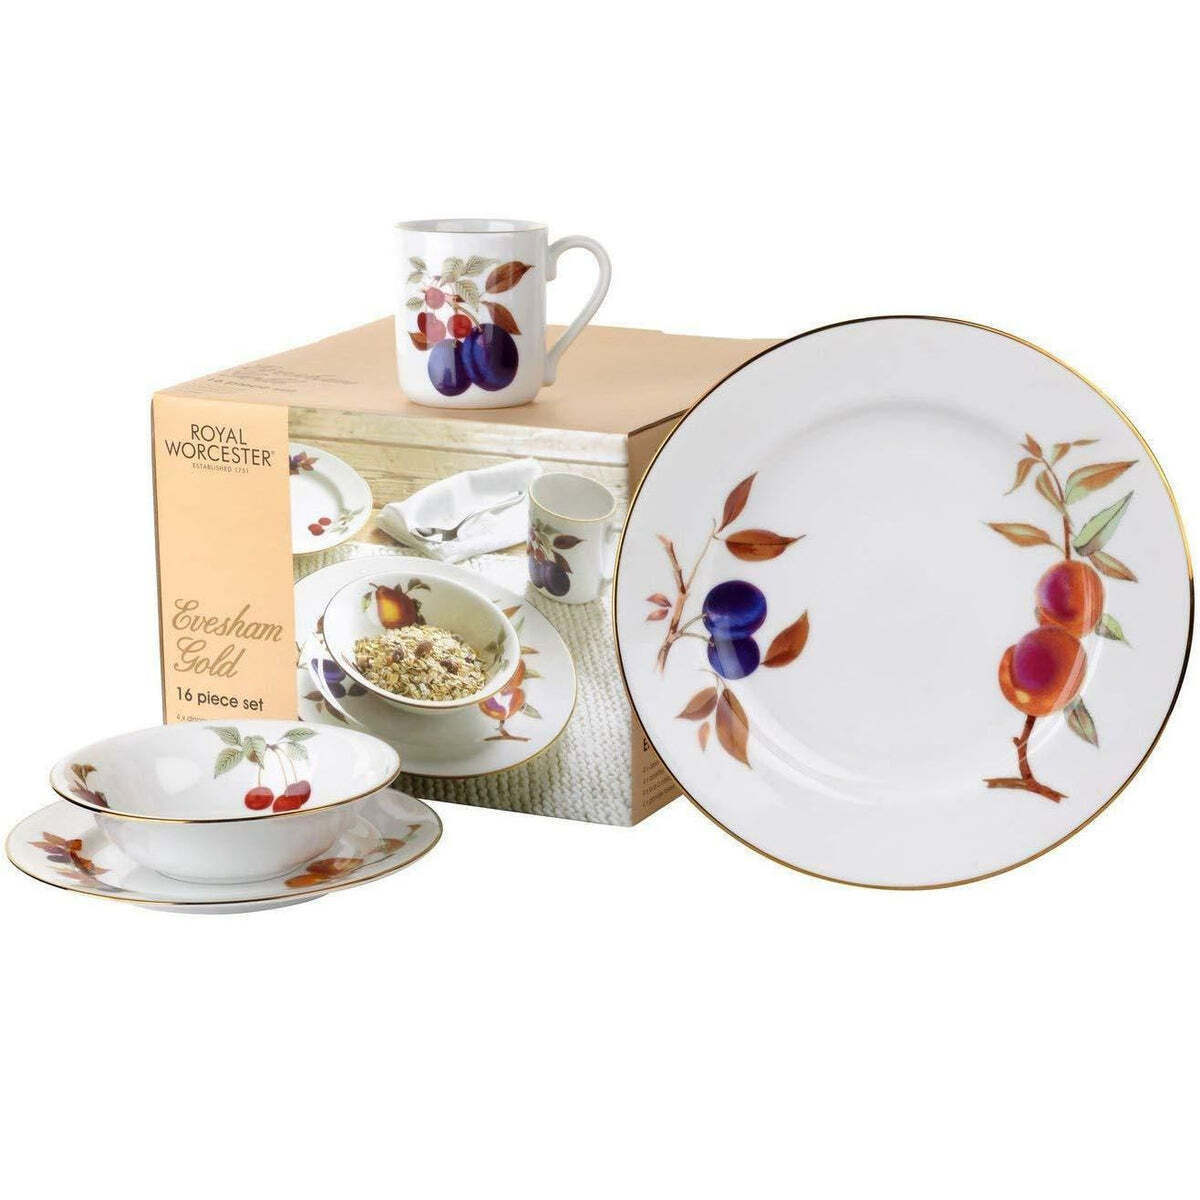 Royal Worcester Evesham Gold 16 Piece Dinnerware Set, Service for 4, Porcelain